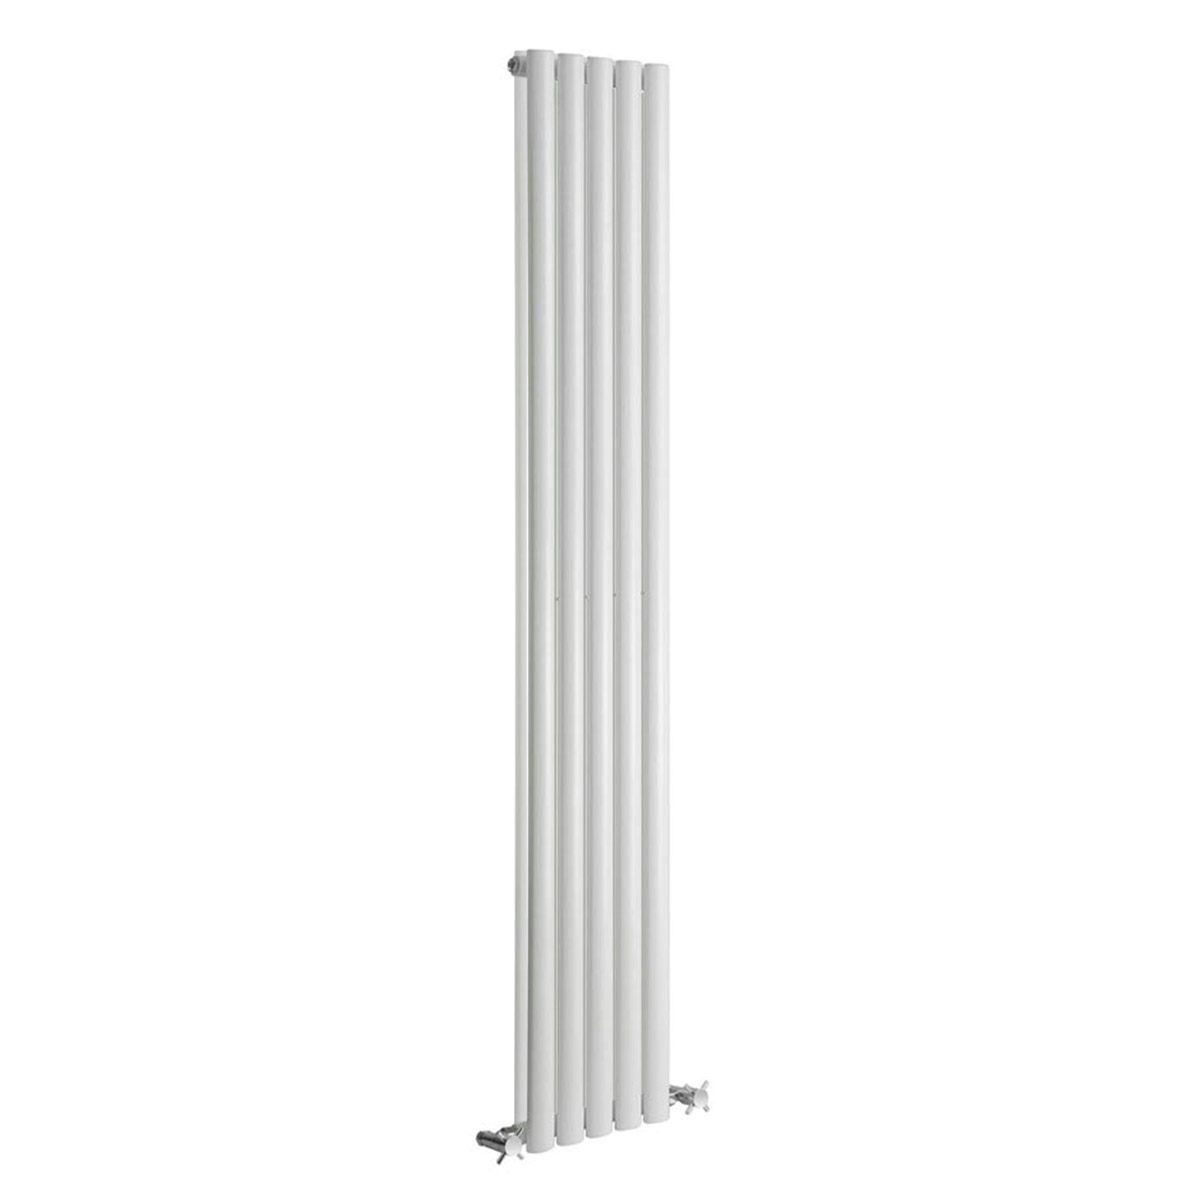 Reina Neva white double vertical steel designer radiator 1800 x 413